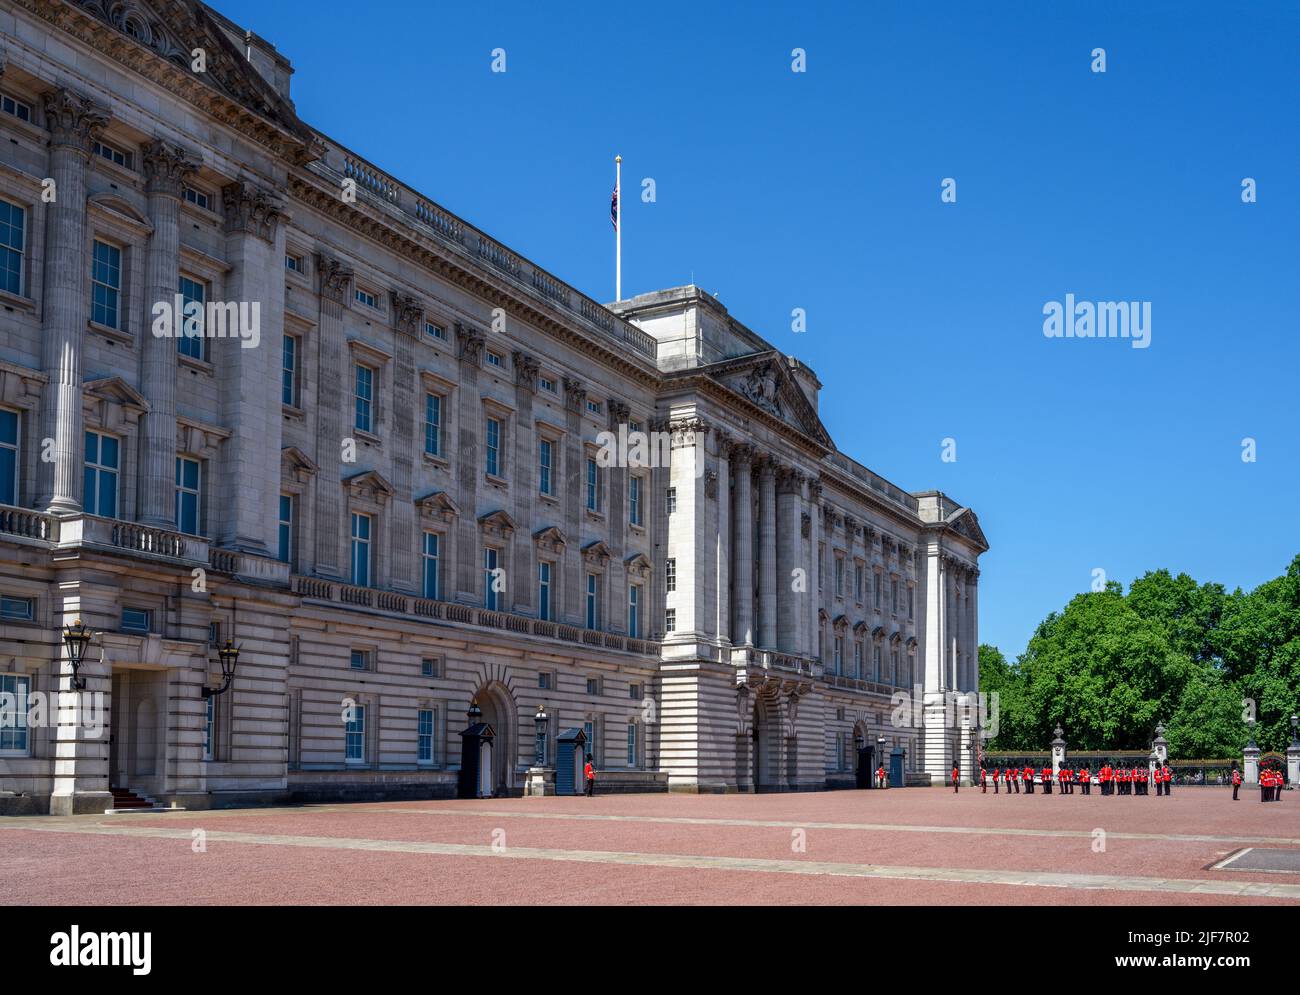 La relève de la garde à Buckingham Palace, Londres, Angleterre, Royaume-Uni Banque D'Images